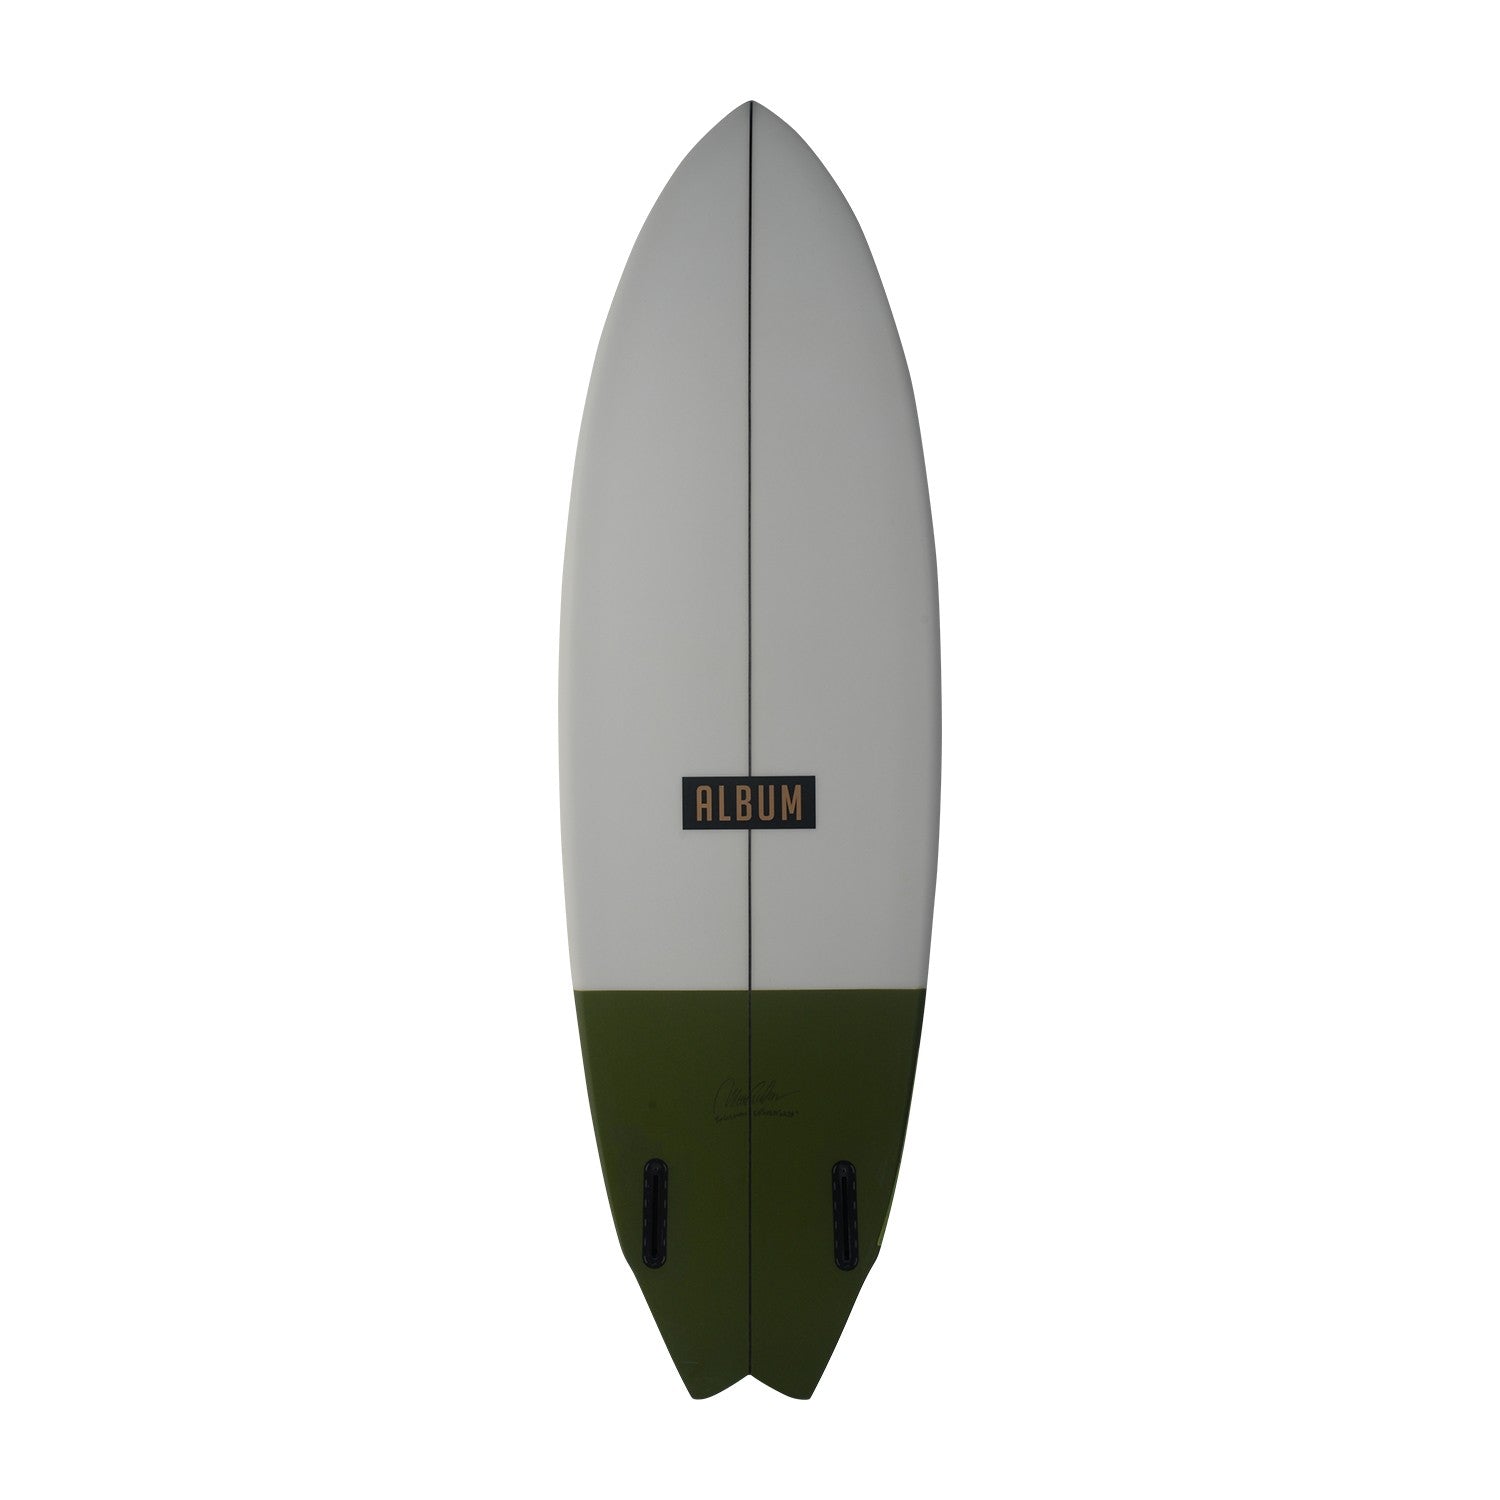 ALBUM Surfboards - Twinsman 5'8 (PU) - Army Green